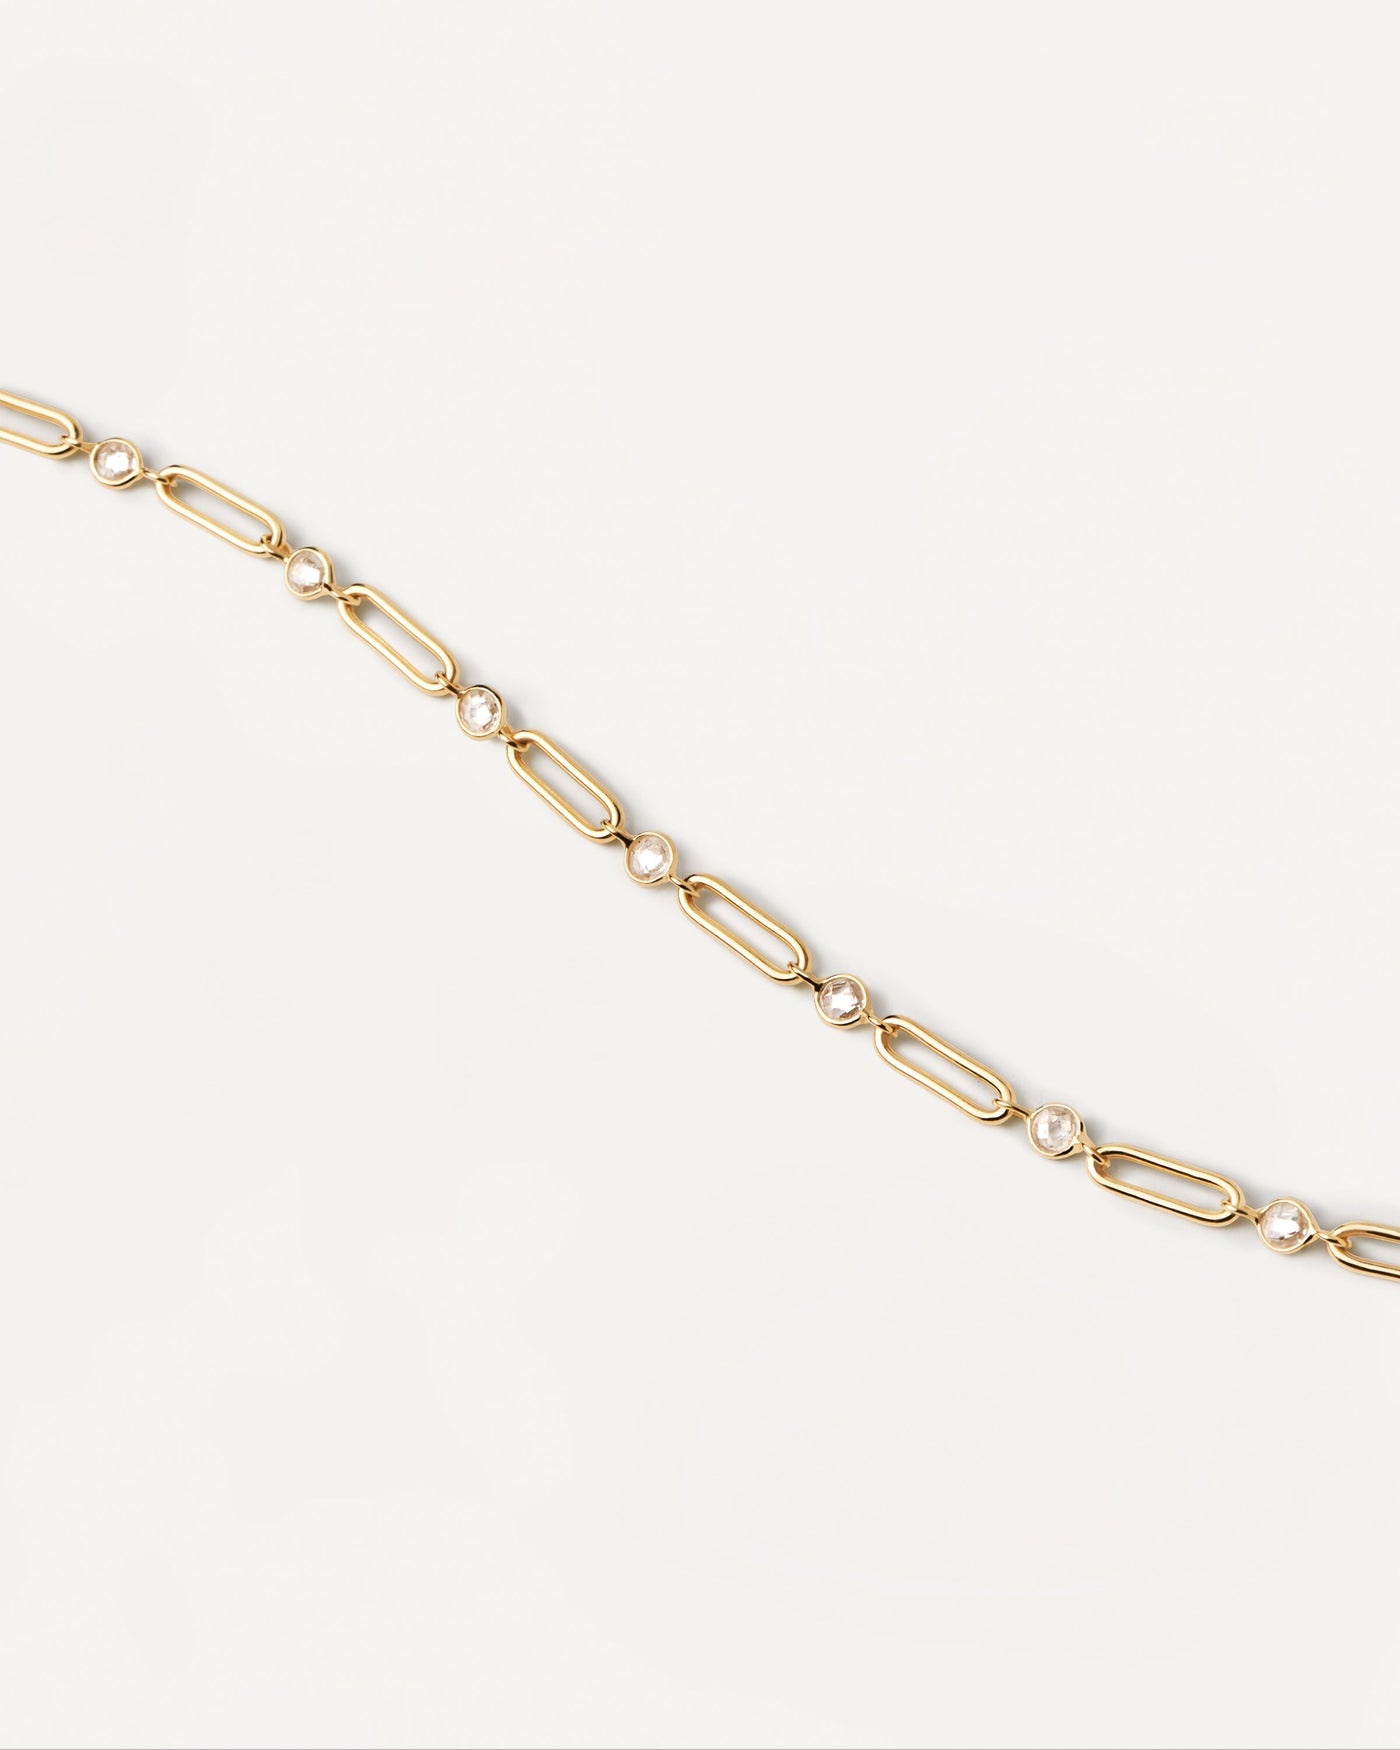 Gliederkette Miami Halskette. Große Gliederkette aus vergoldetem Silber mit weißen Zirkonia. Erhalten Sie die neuesten Produkte von PDPAOLA. Geben Sie Ihre Bestellung sicher auf und erhalten Sie diesen Bestseller.